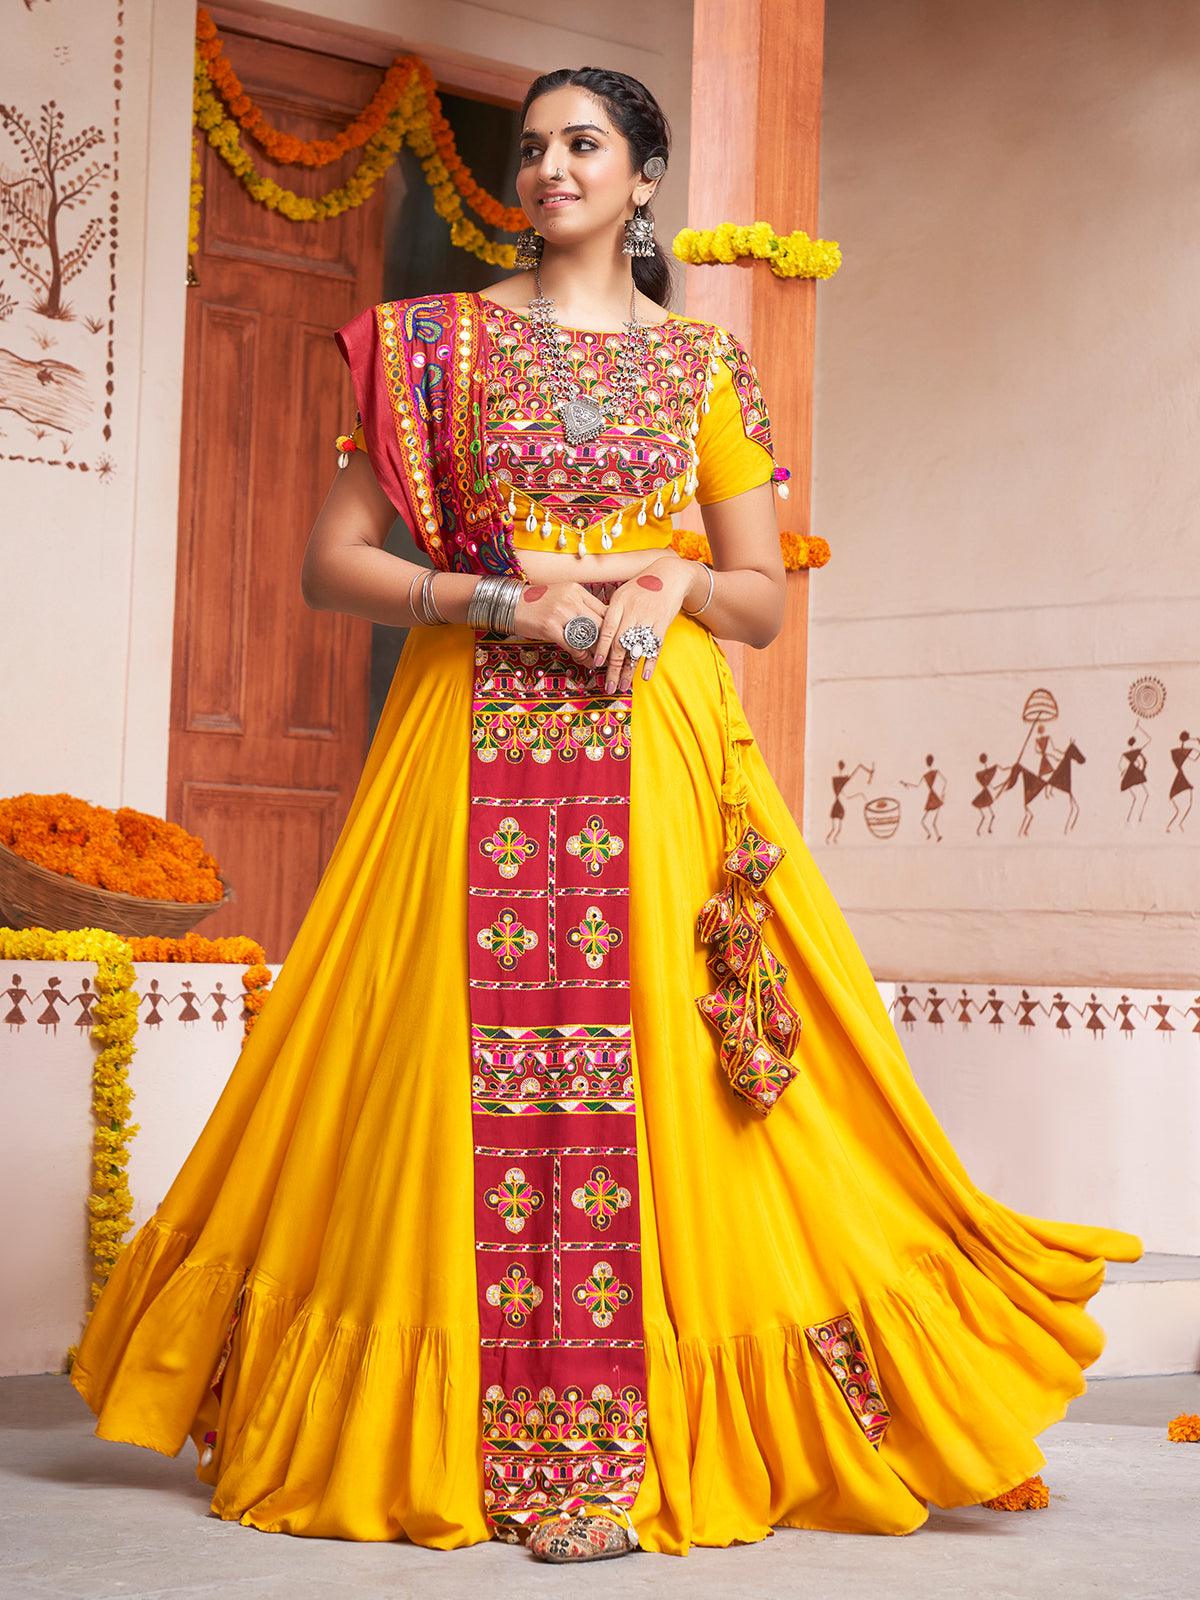 VJVFASHIONS.com - Buy Now @ https://goo.gl/ff7WPR Product No 👉 VJV-GLIT75  @ www.vjvfashions.com #chaniyacholi #ghagracholi #indianwear #indianwedding  #fashion #fashions #trends #cultures #india #womenwear #weddingwear  #ethnics #clothes #clothing ...